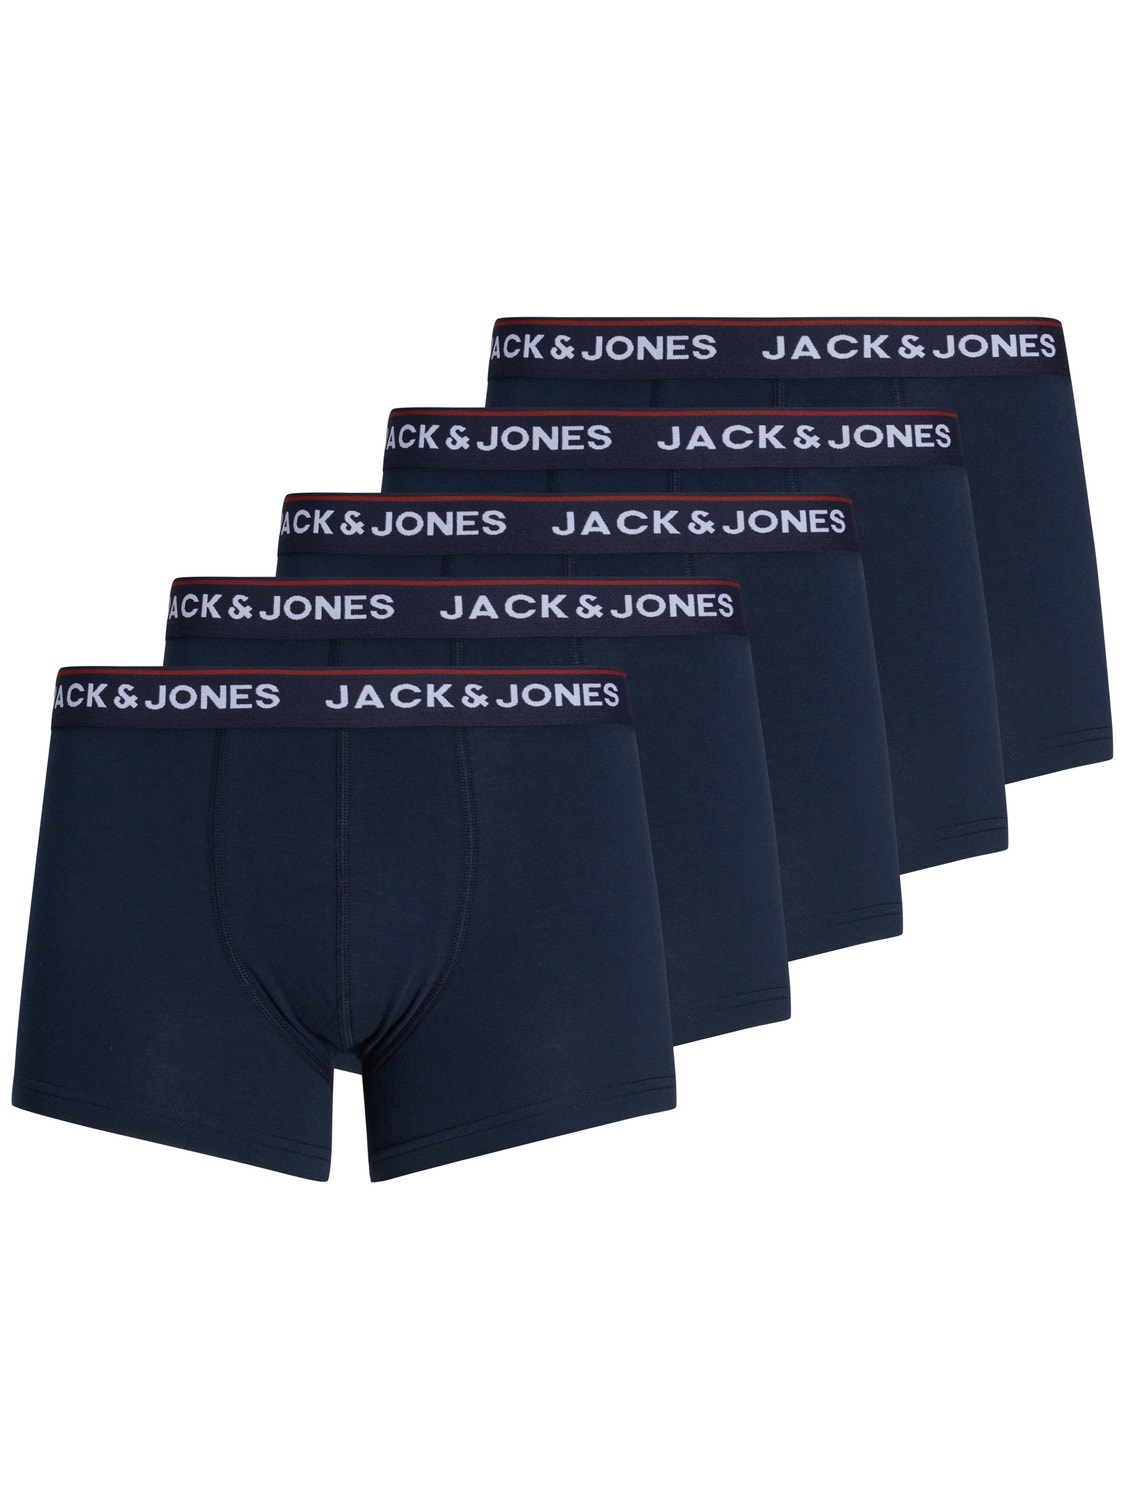 Jack & Jones 5-pakuotės Trumpikės -Navy Blazer - 12217070